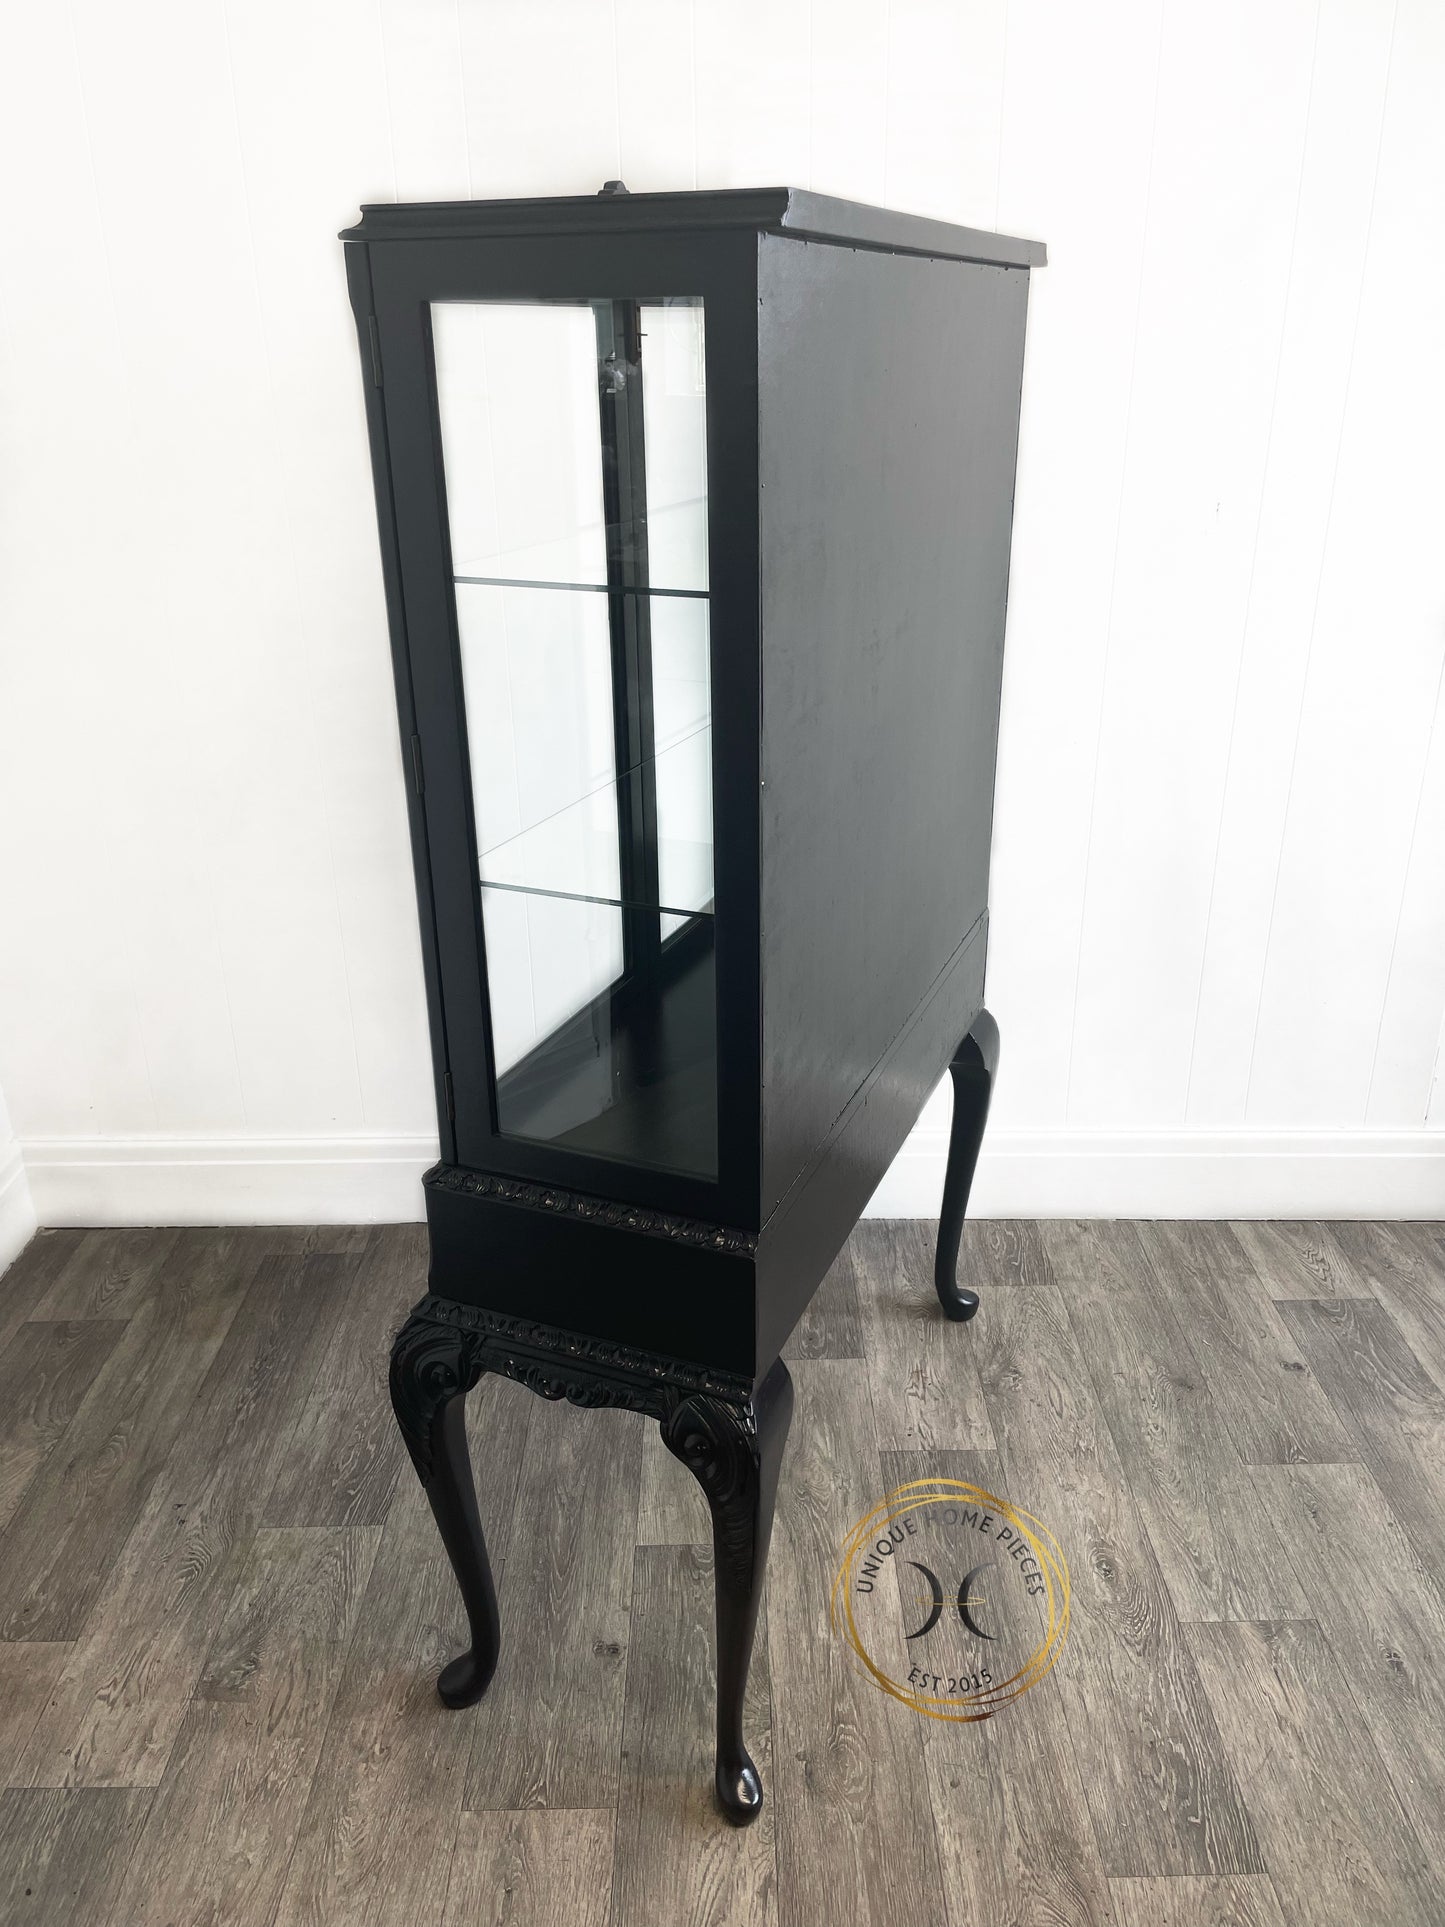 Black Bespoke Bevelled Glass Door Display Cabinet, Queen Anne Legs,Turquoise Crane Bird Design